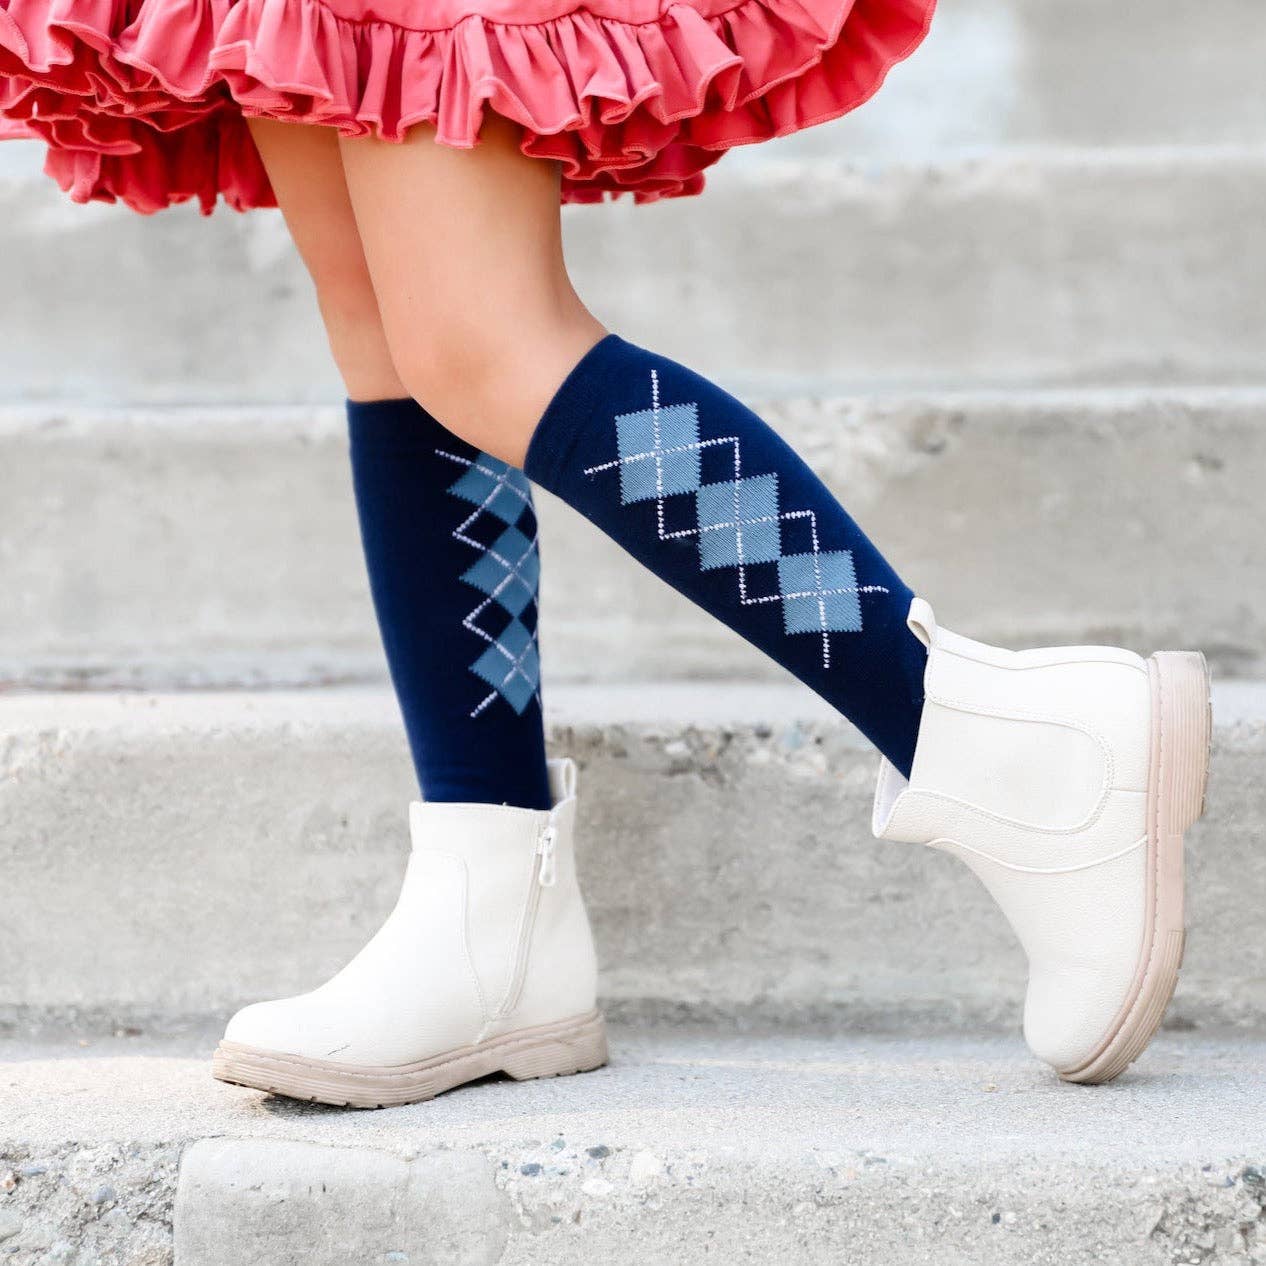 Little Stocking Co. - School Girl Knee High Sock 3-Pack: 1.5-3 YEARS